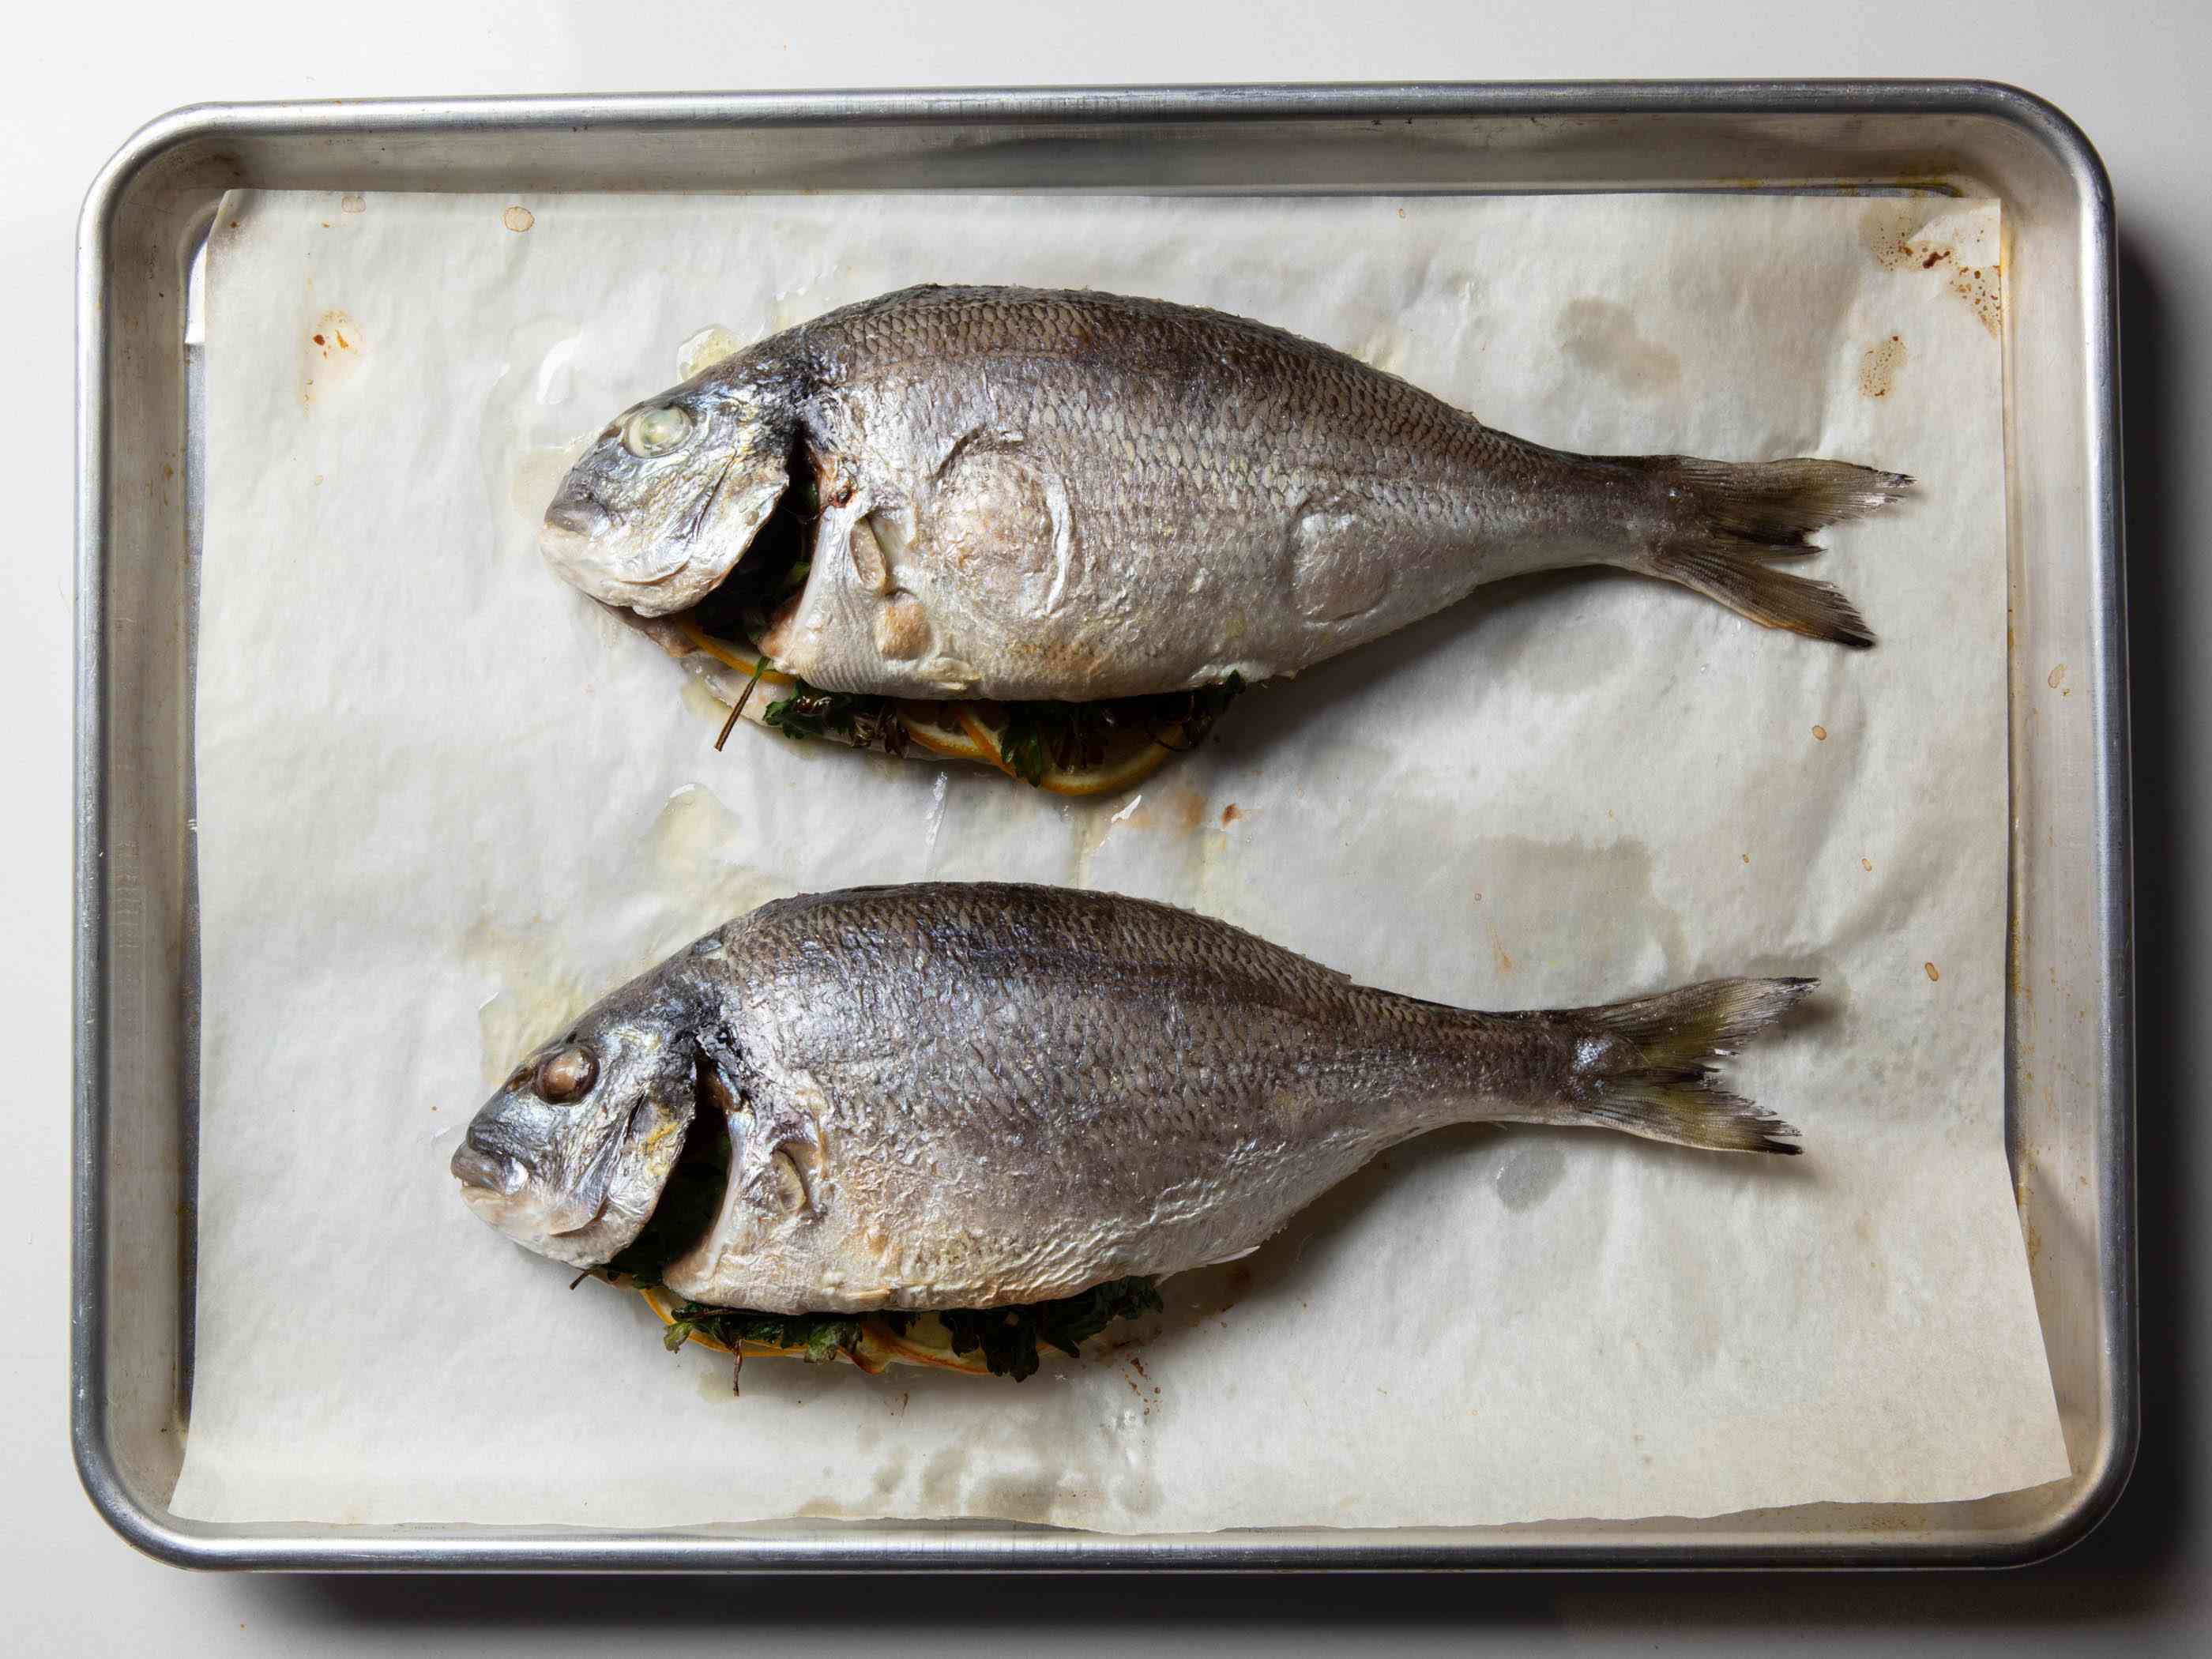 两条烤熟的整鱼放在烤盘上，鱼皮呈浅褐色。